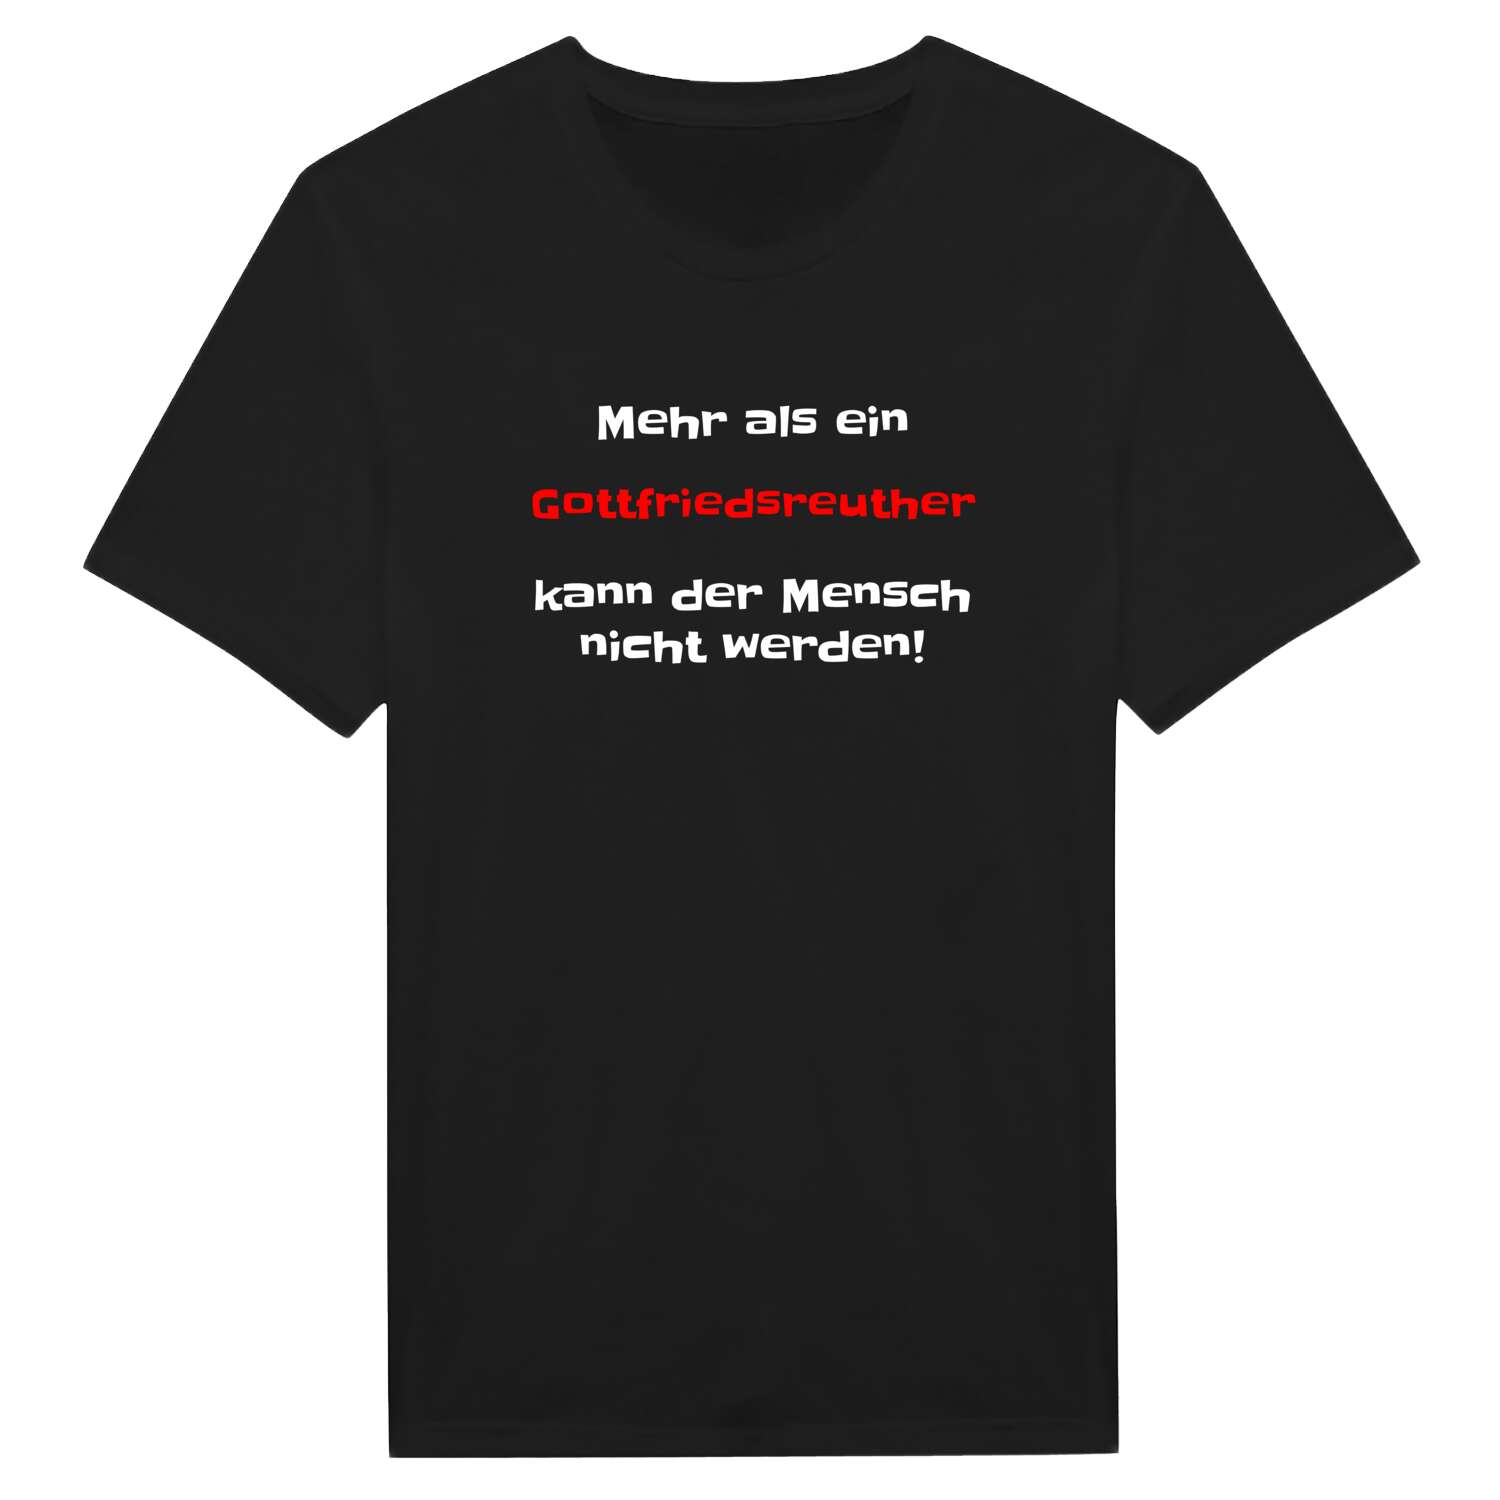 Gottfriedsreuth T-Shirt »Mehr als ein«